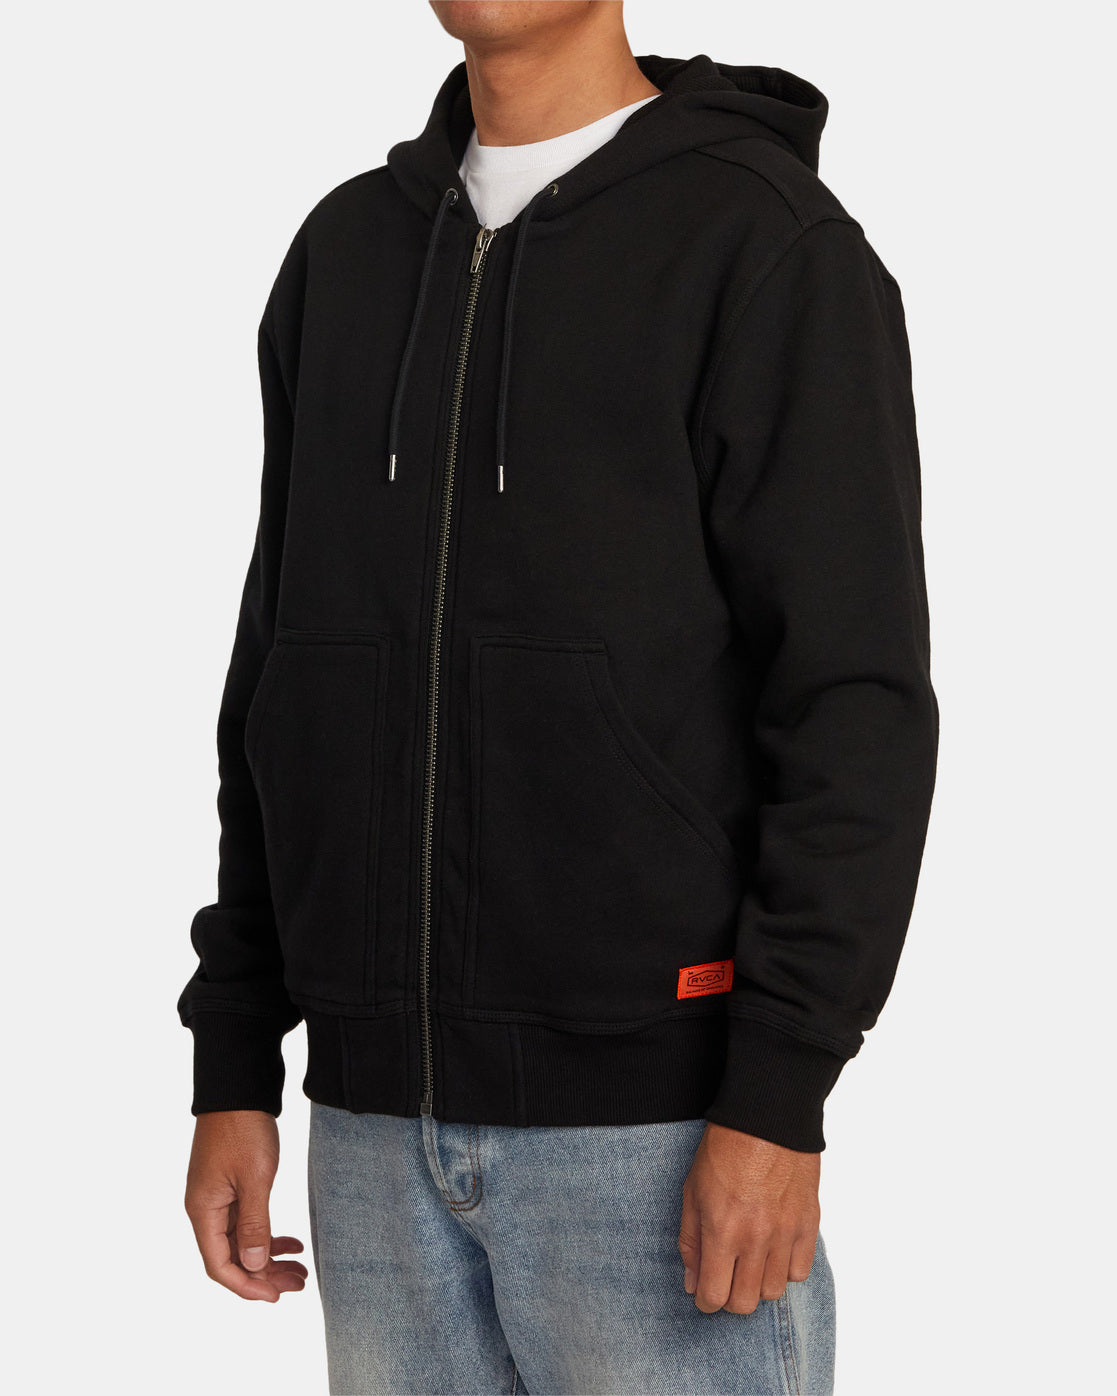 Chainmail Zip-Up Hooded Sweatshirt - Black